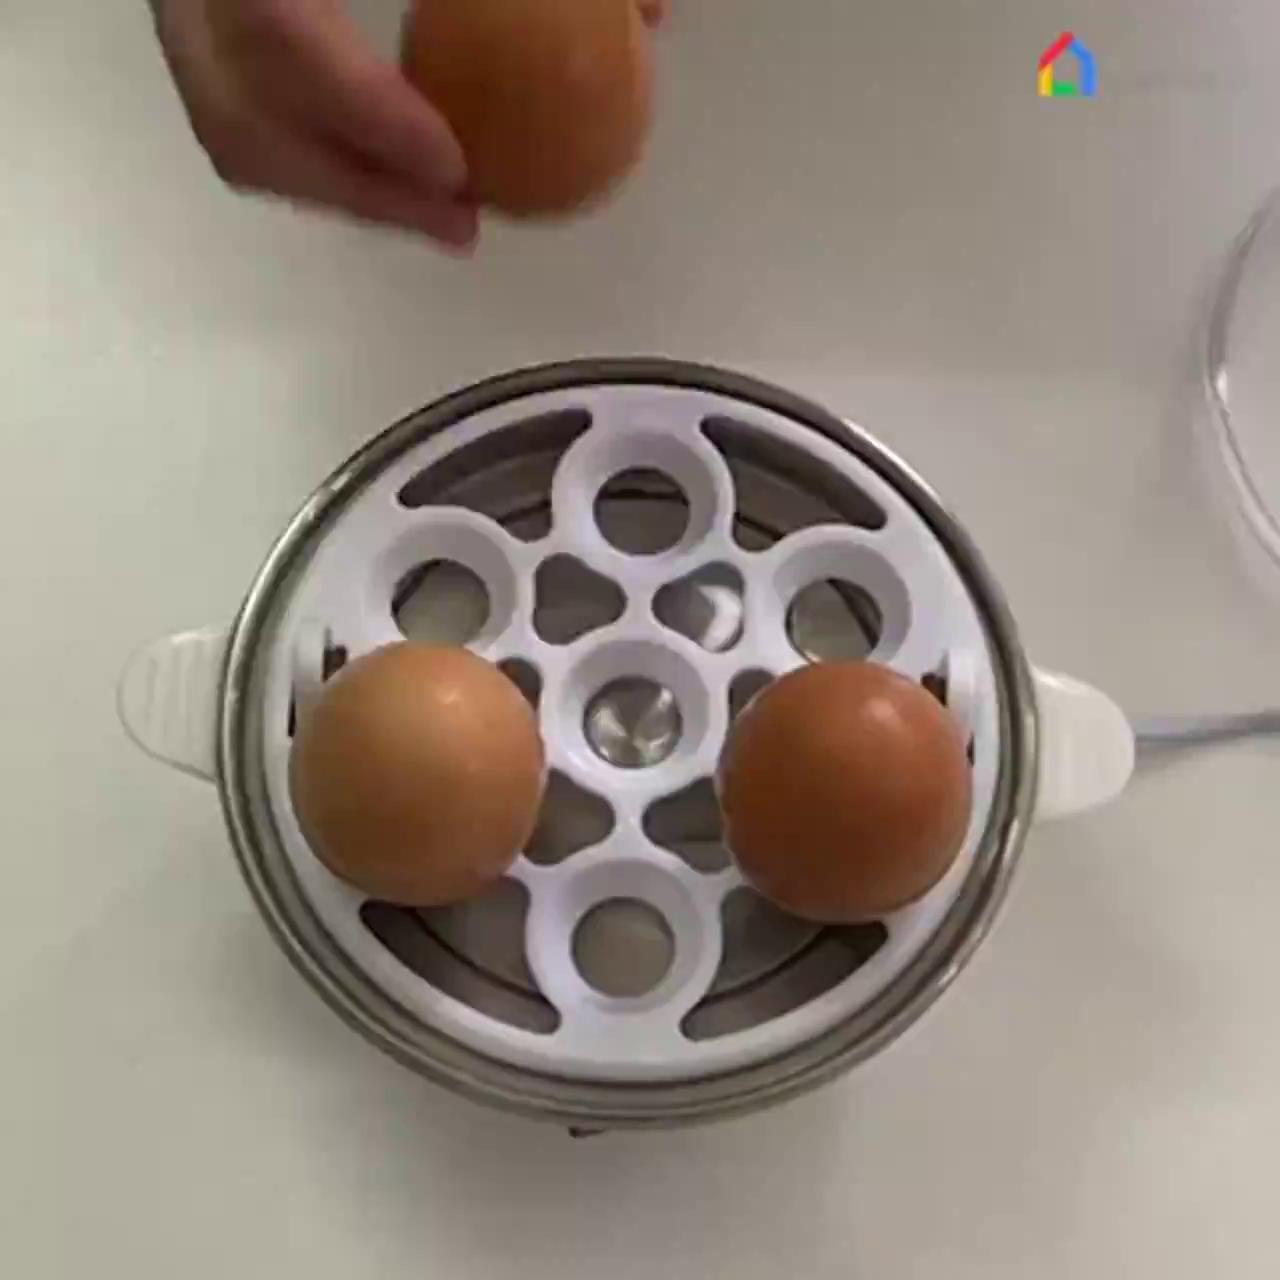 พร้อมส่งทันที เครื่องลวกไข่อัจฉริยะ iEgg by InnoHome !! ที่ตอกไข่ ใช้งานง่าย ทำไข่ลวก ไข่ออนเซน ไข่ต้ม ไข่ยางมะตูม ไม่มีพลาด!! เครื่องต้มไข่